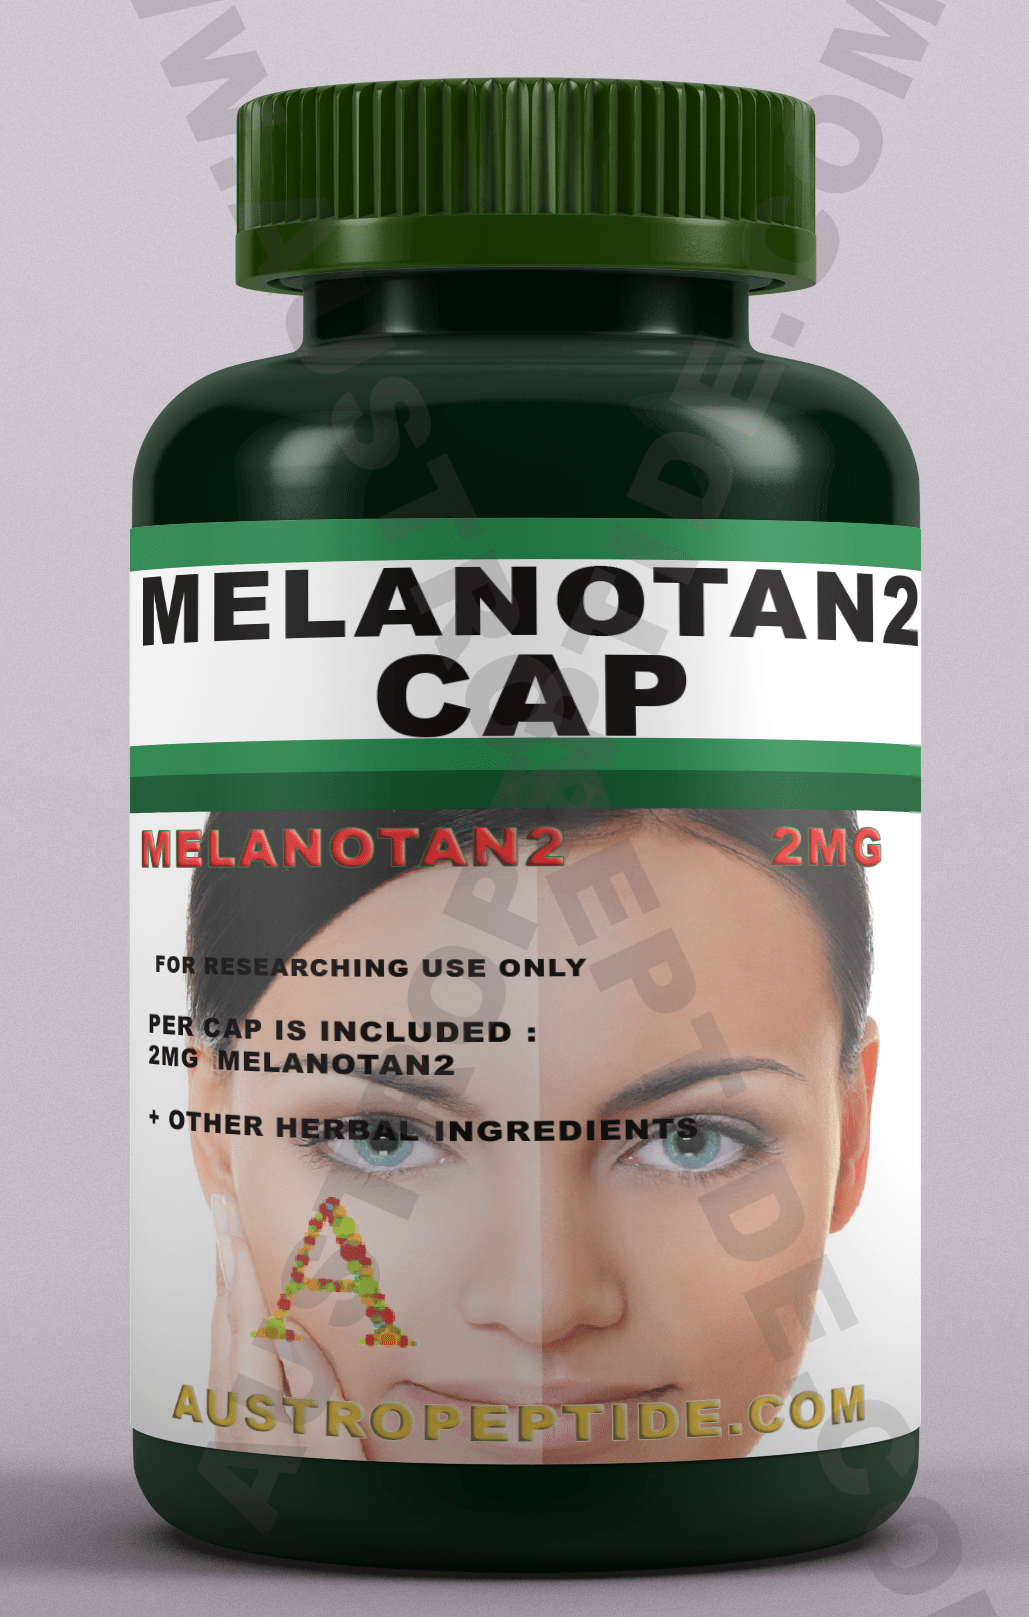 Melanotan2 CAPSULE